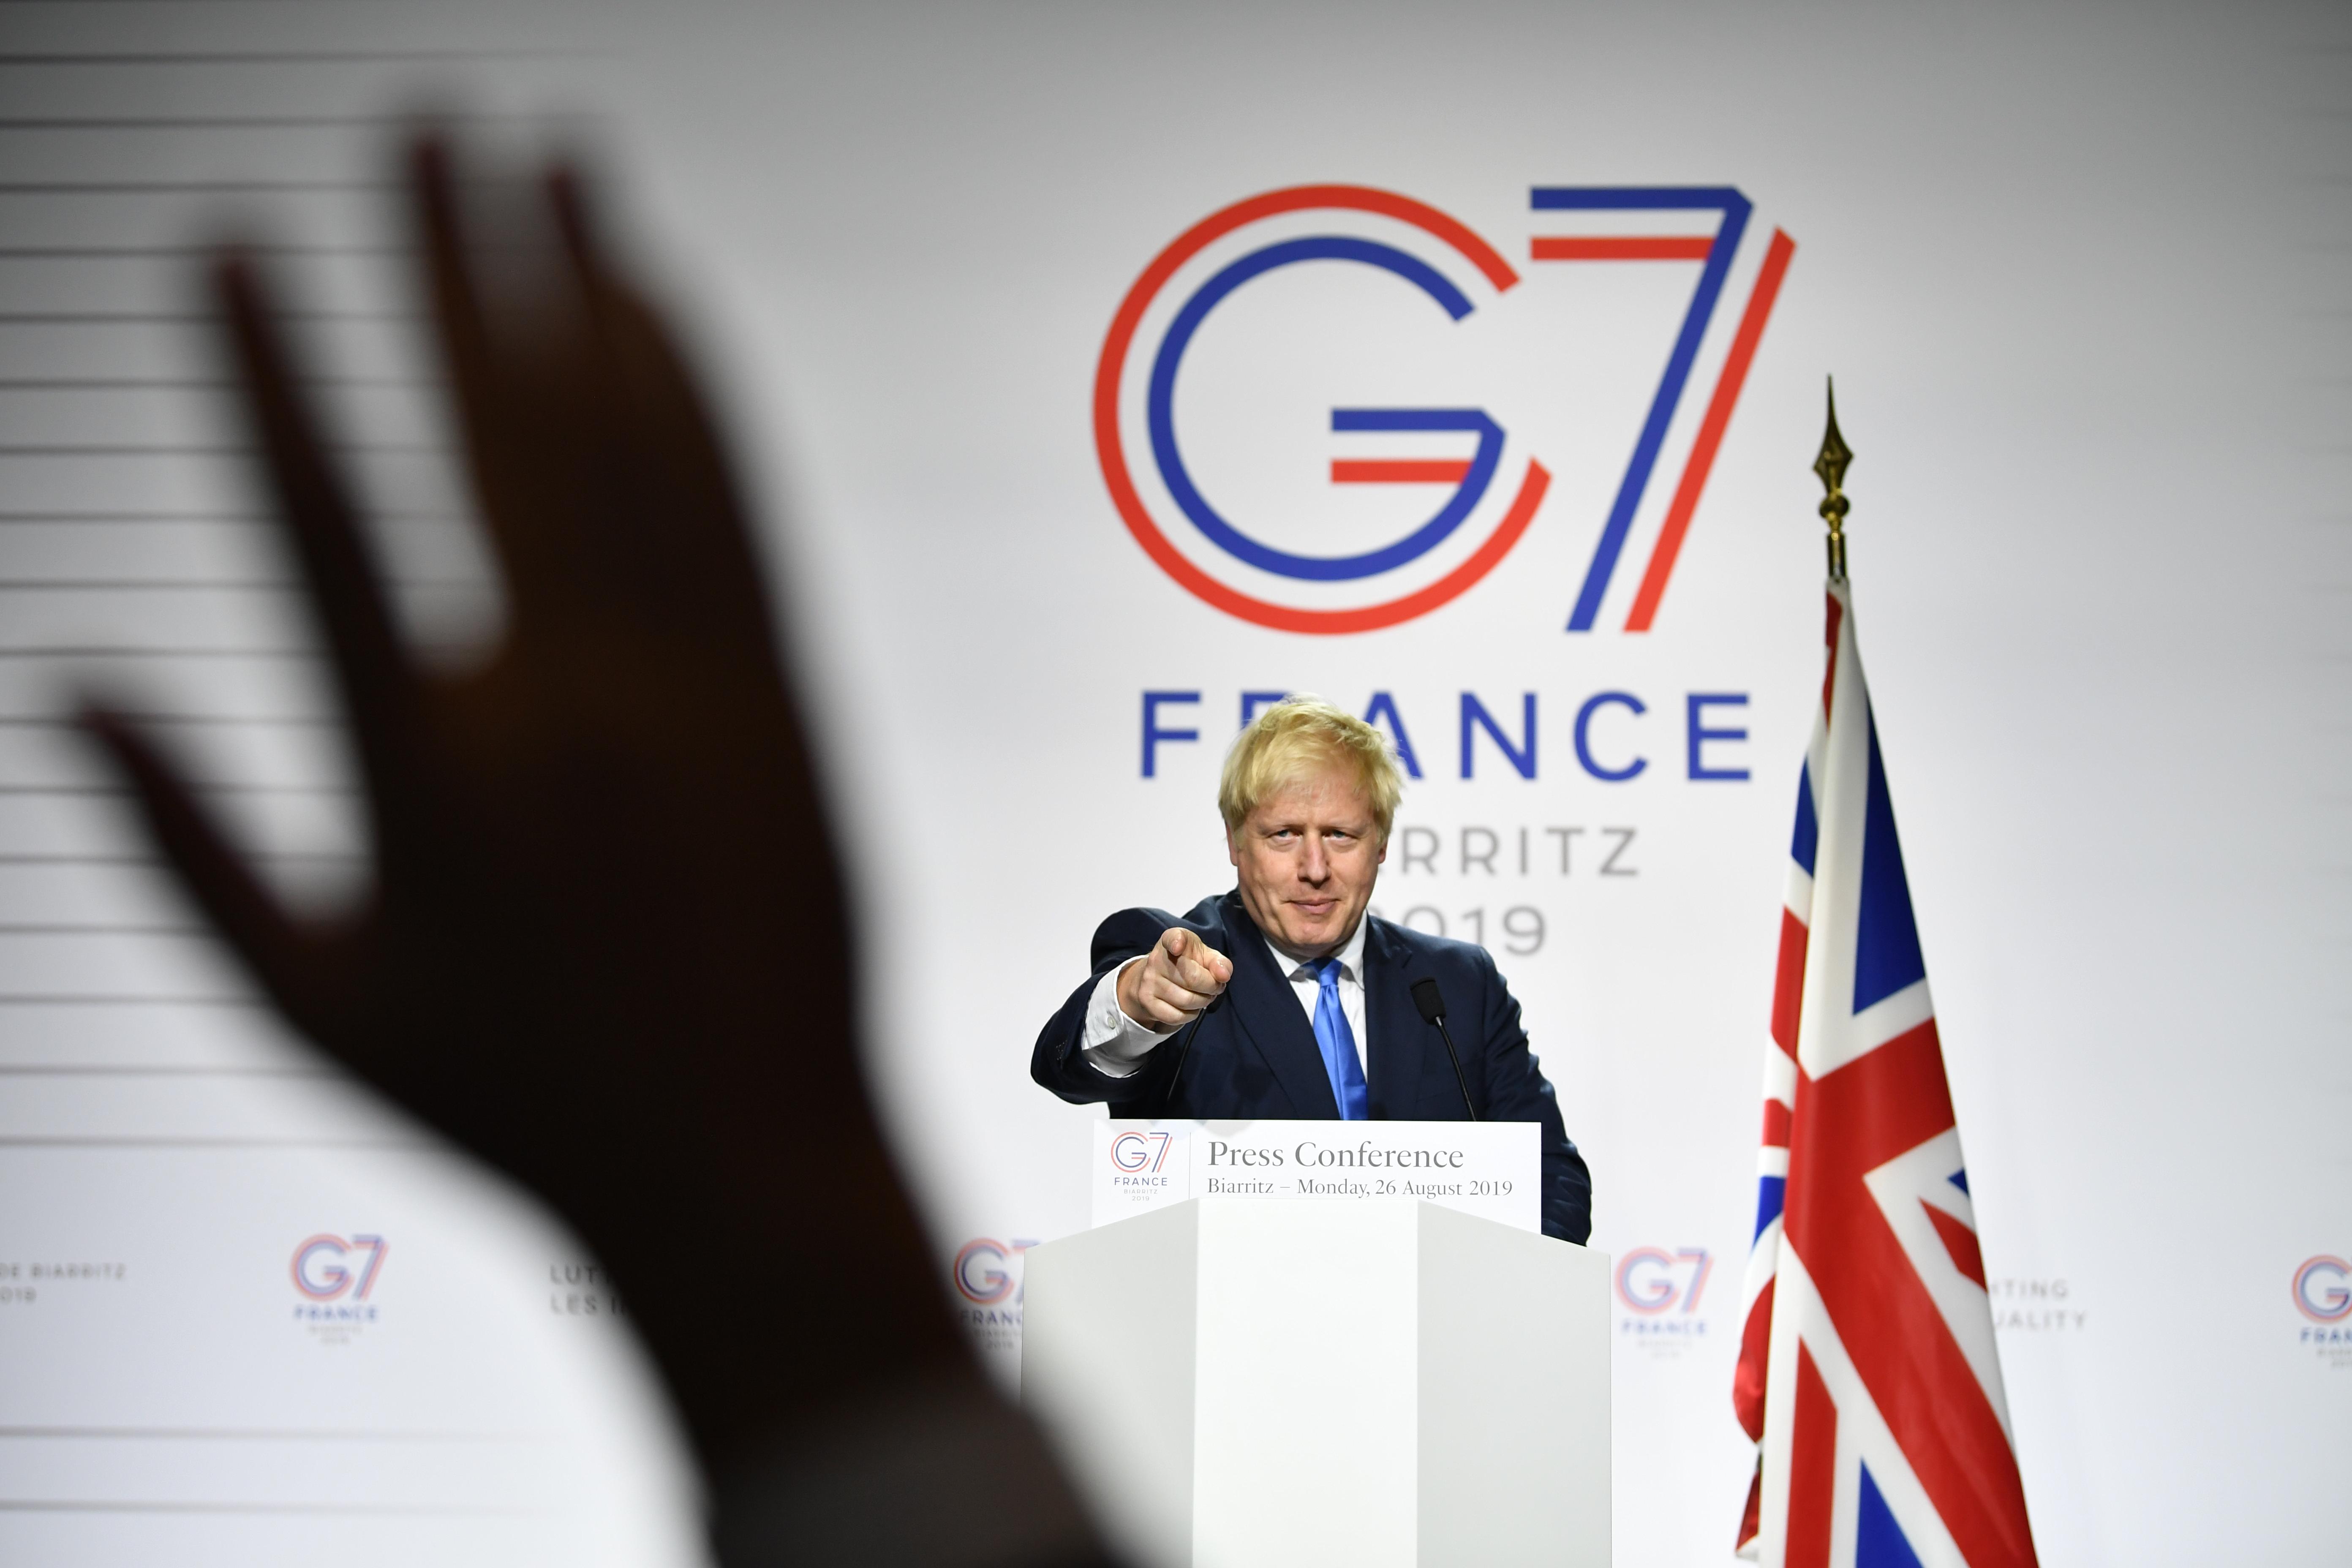 G7 global leader from UK Boris Johnson